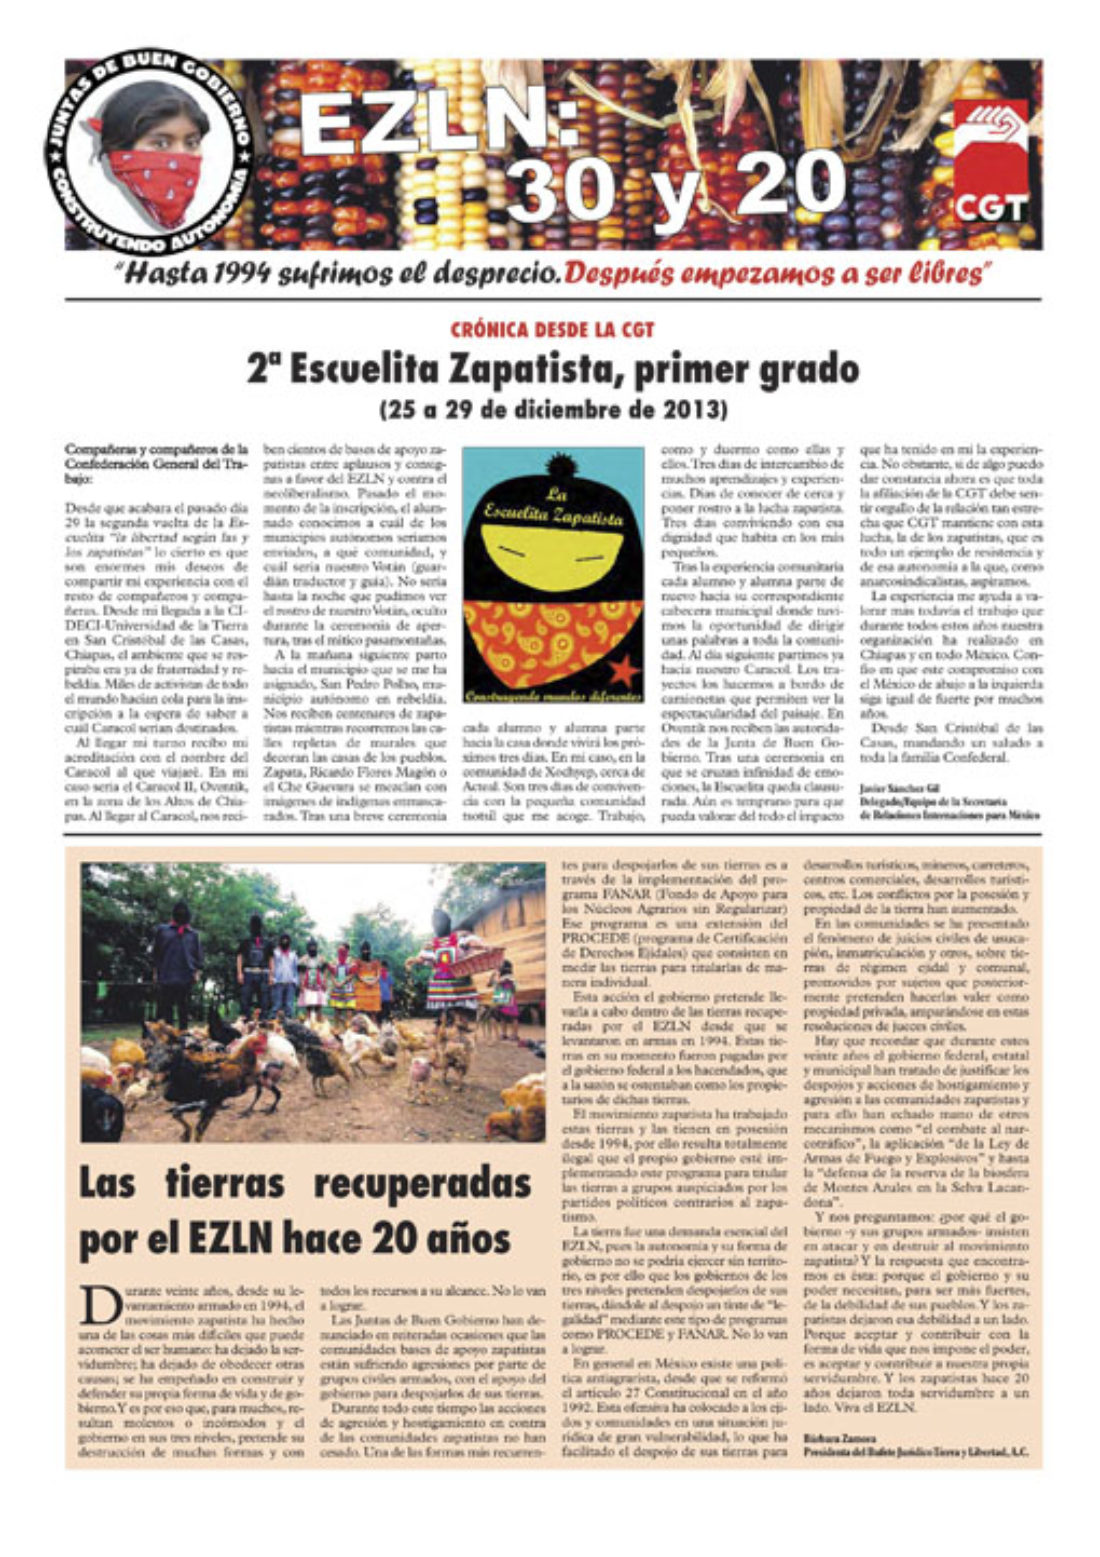 EZLN: 30 y 20 – enero 2014